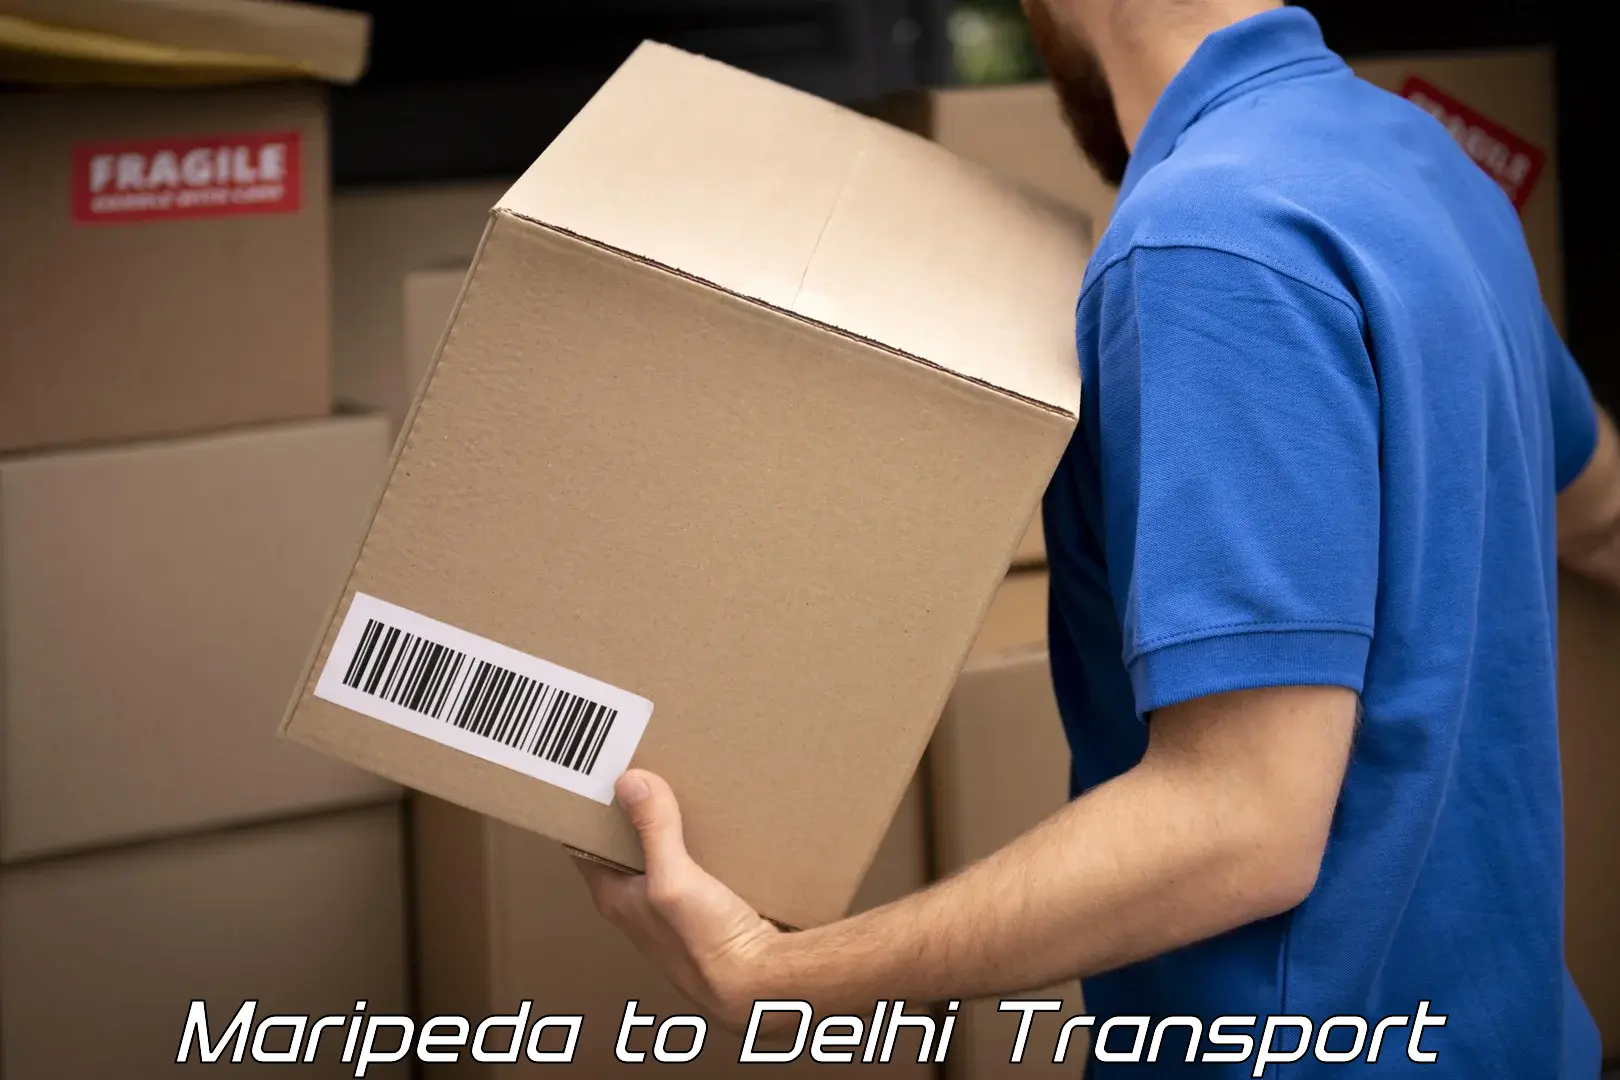 Transport in sharing Maripeda to Delhi